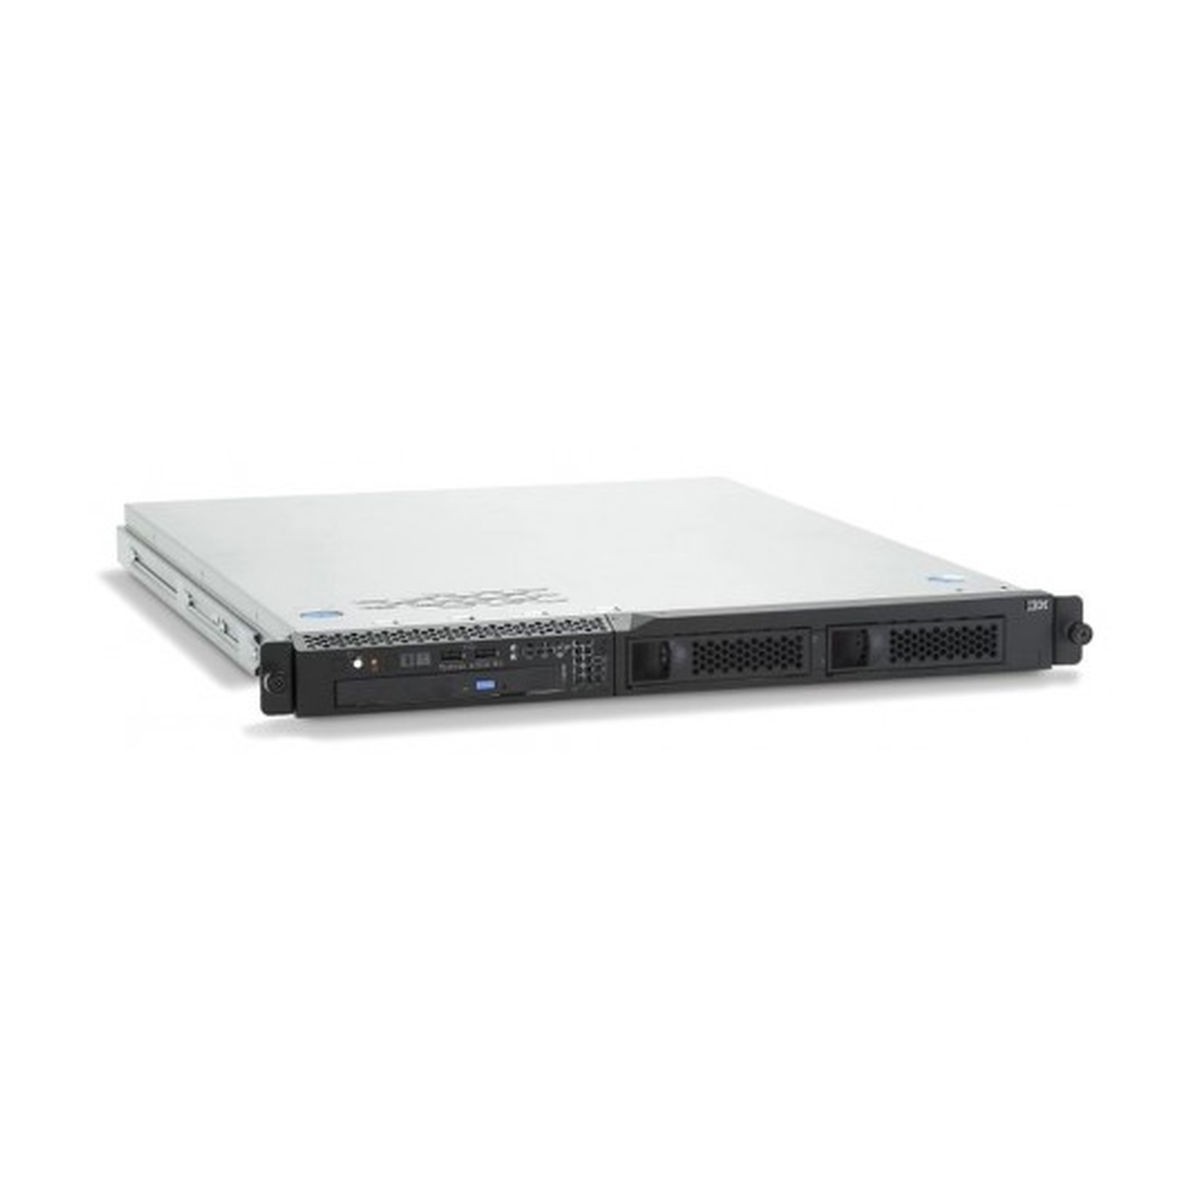 IBM x3250 M4 3.10QC E3-1220 v2 8GB 2x4TB SATA